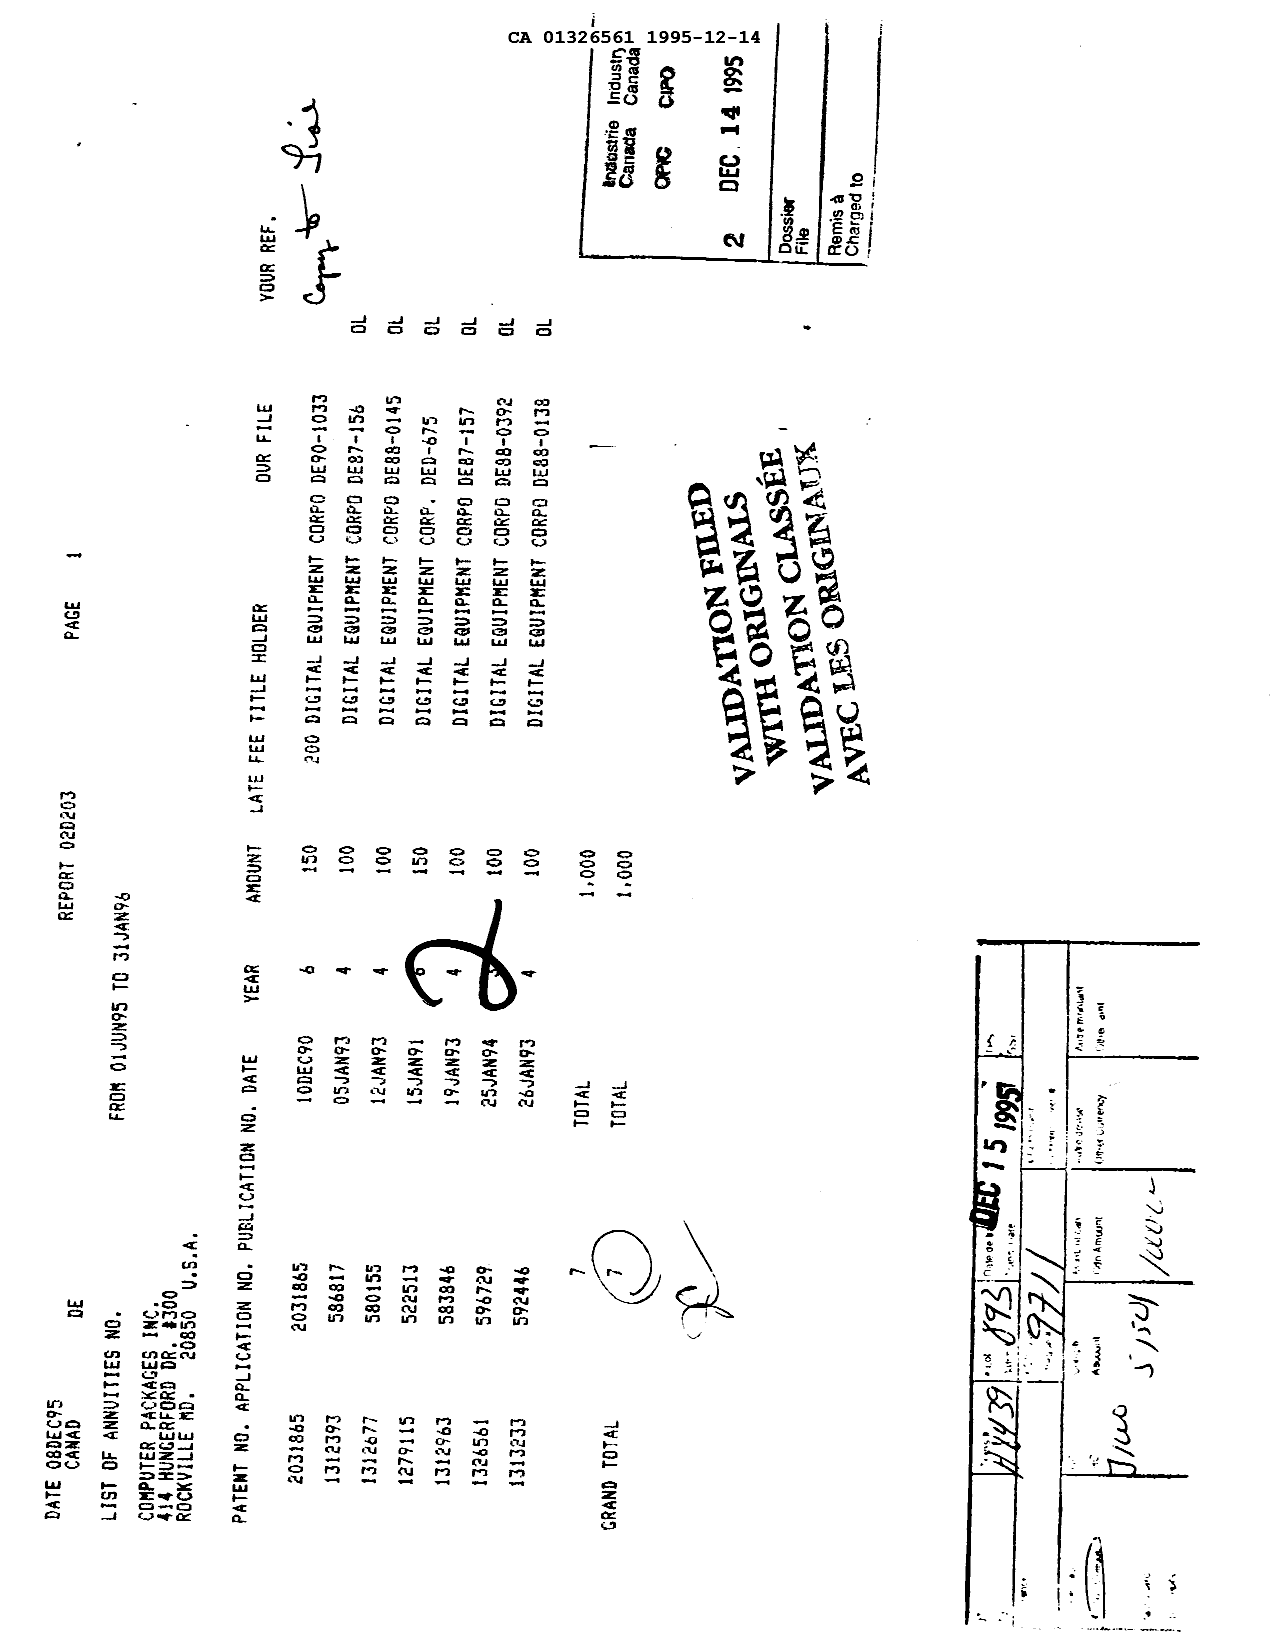 Document de brevet canadien 1326561. Taxes 19951214. Image 1 de 1